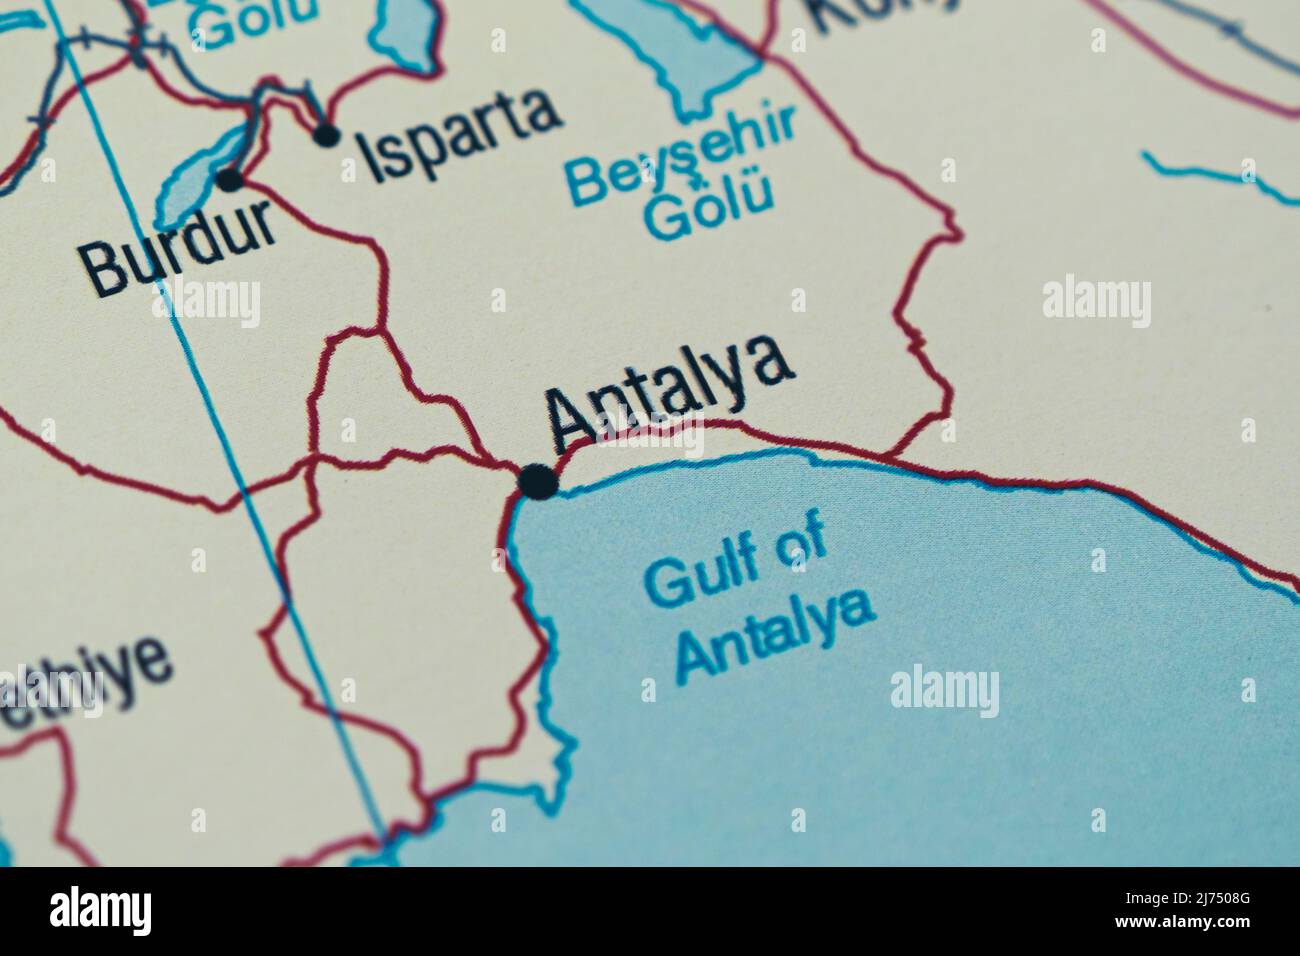 Antalya Stadt und Lage auf der Karte, Makroaufnahme und Nahaufnahme von Antalya auf der Karte, Reiseidee, Urlaubskonzept, türkische Kultur und Sprache, Urlaub Stockfoto